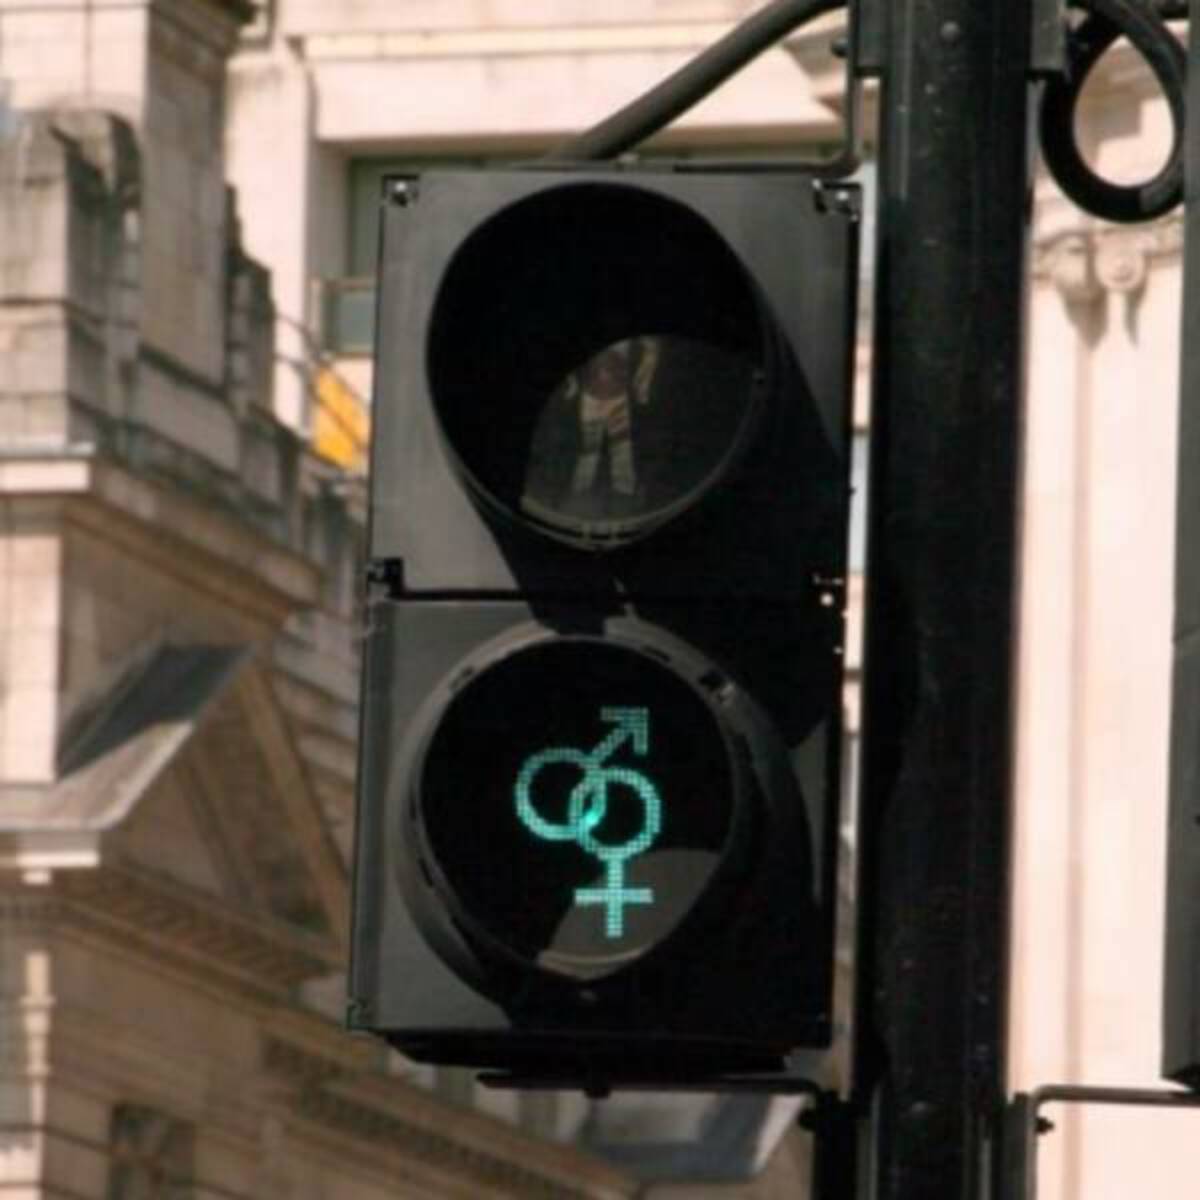 traffic light - 8